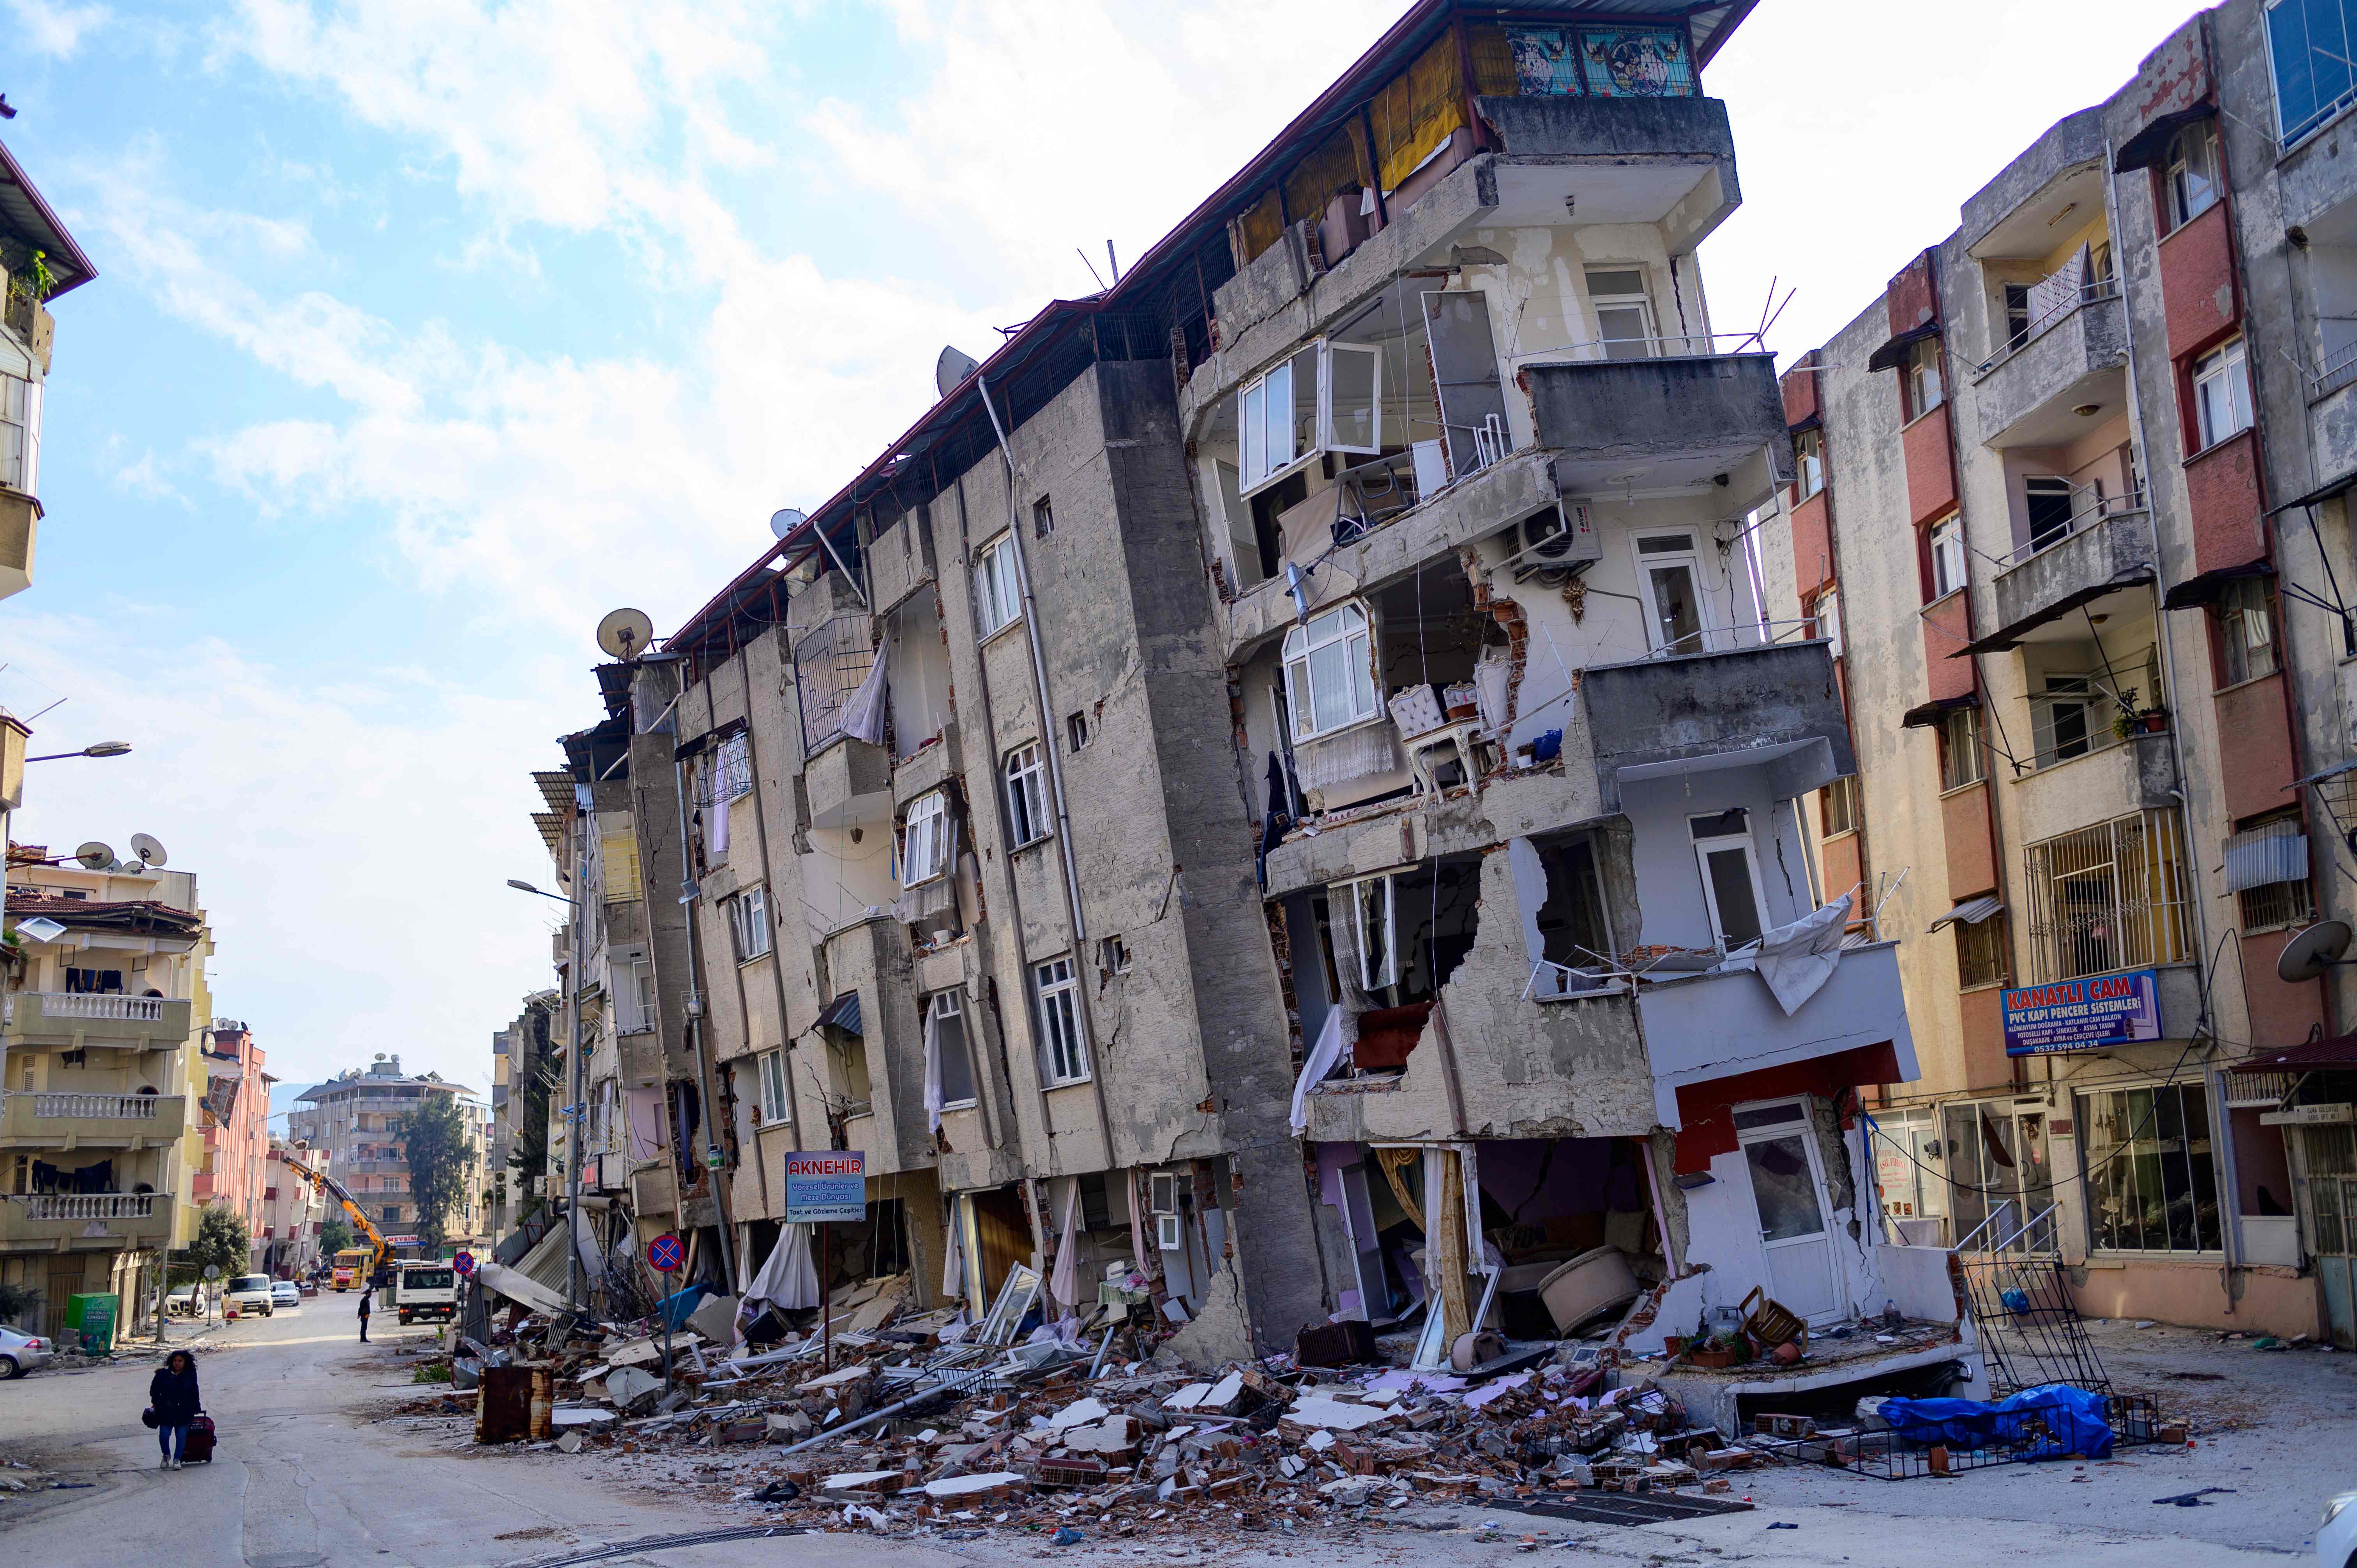 زلزال تركيا وسوريا.. تغطية مباشرة للخسائر وجهود الإنقاذ | الشرق للأخبار